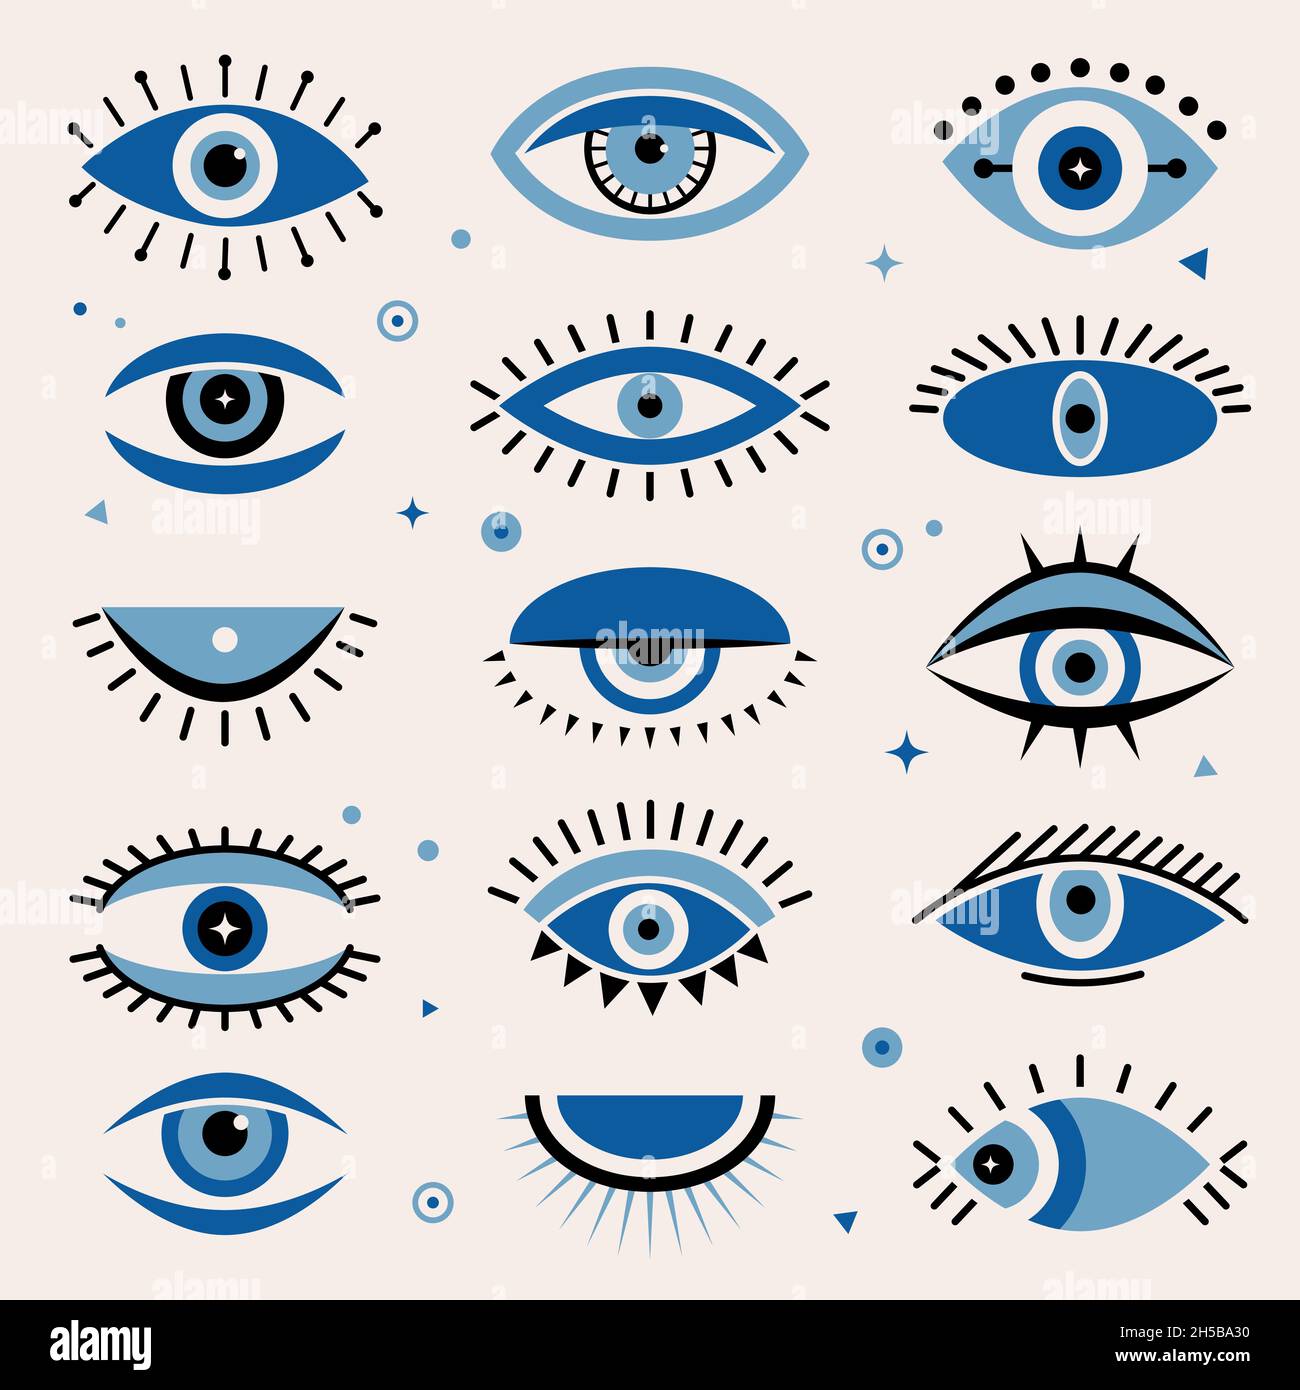 Böses Auge. Tribal dekorative ethnische Grafik griechenland traditionelle Skizzenvektorelemente Stock Vektor